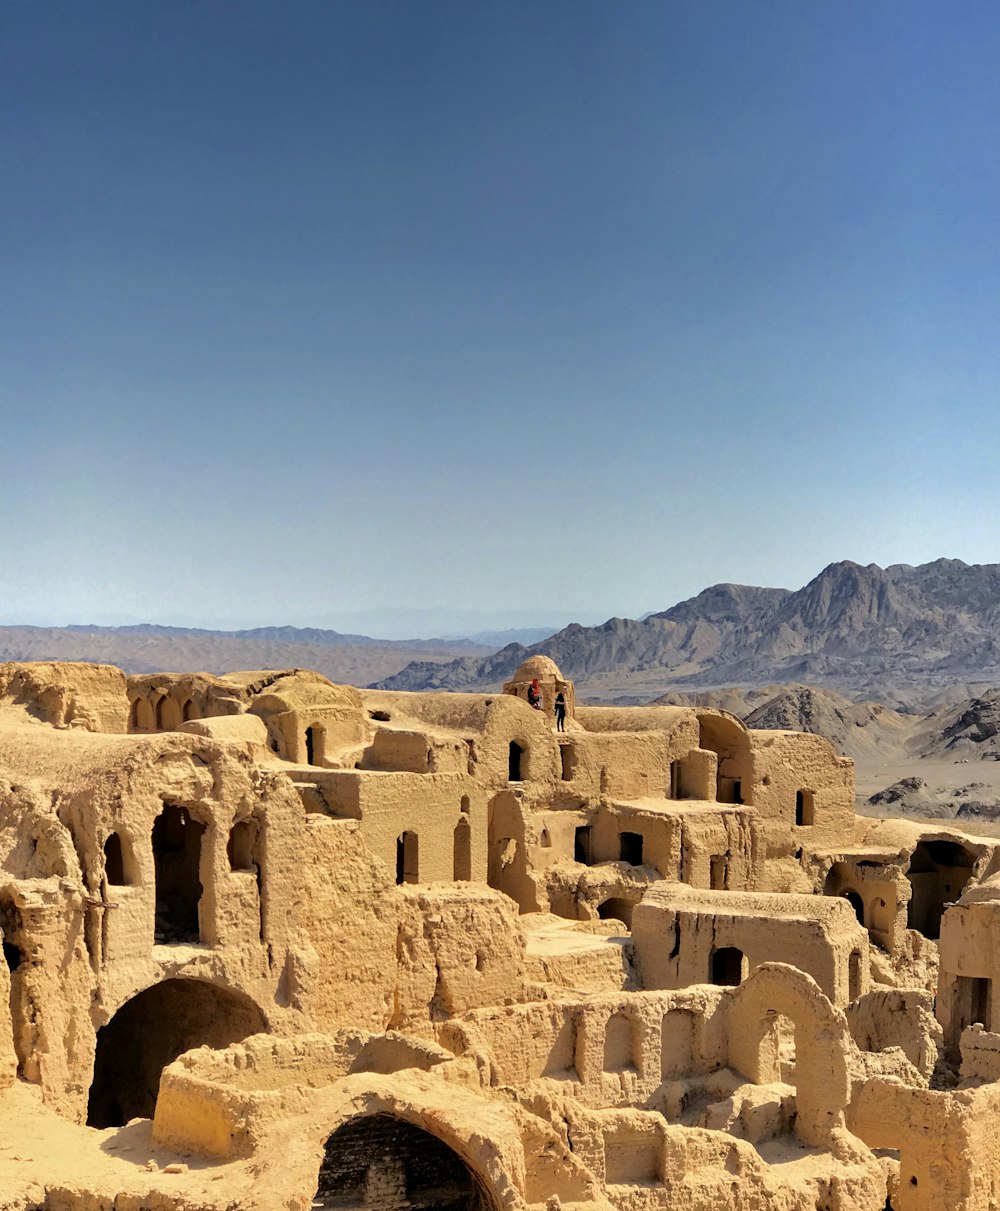 Un grupo de edificios en el desierto con montañas al fondo